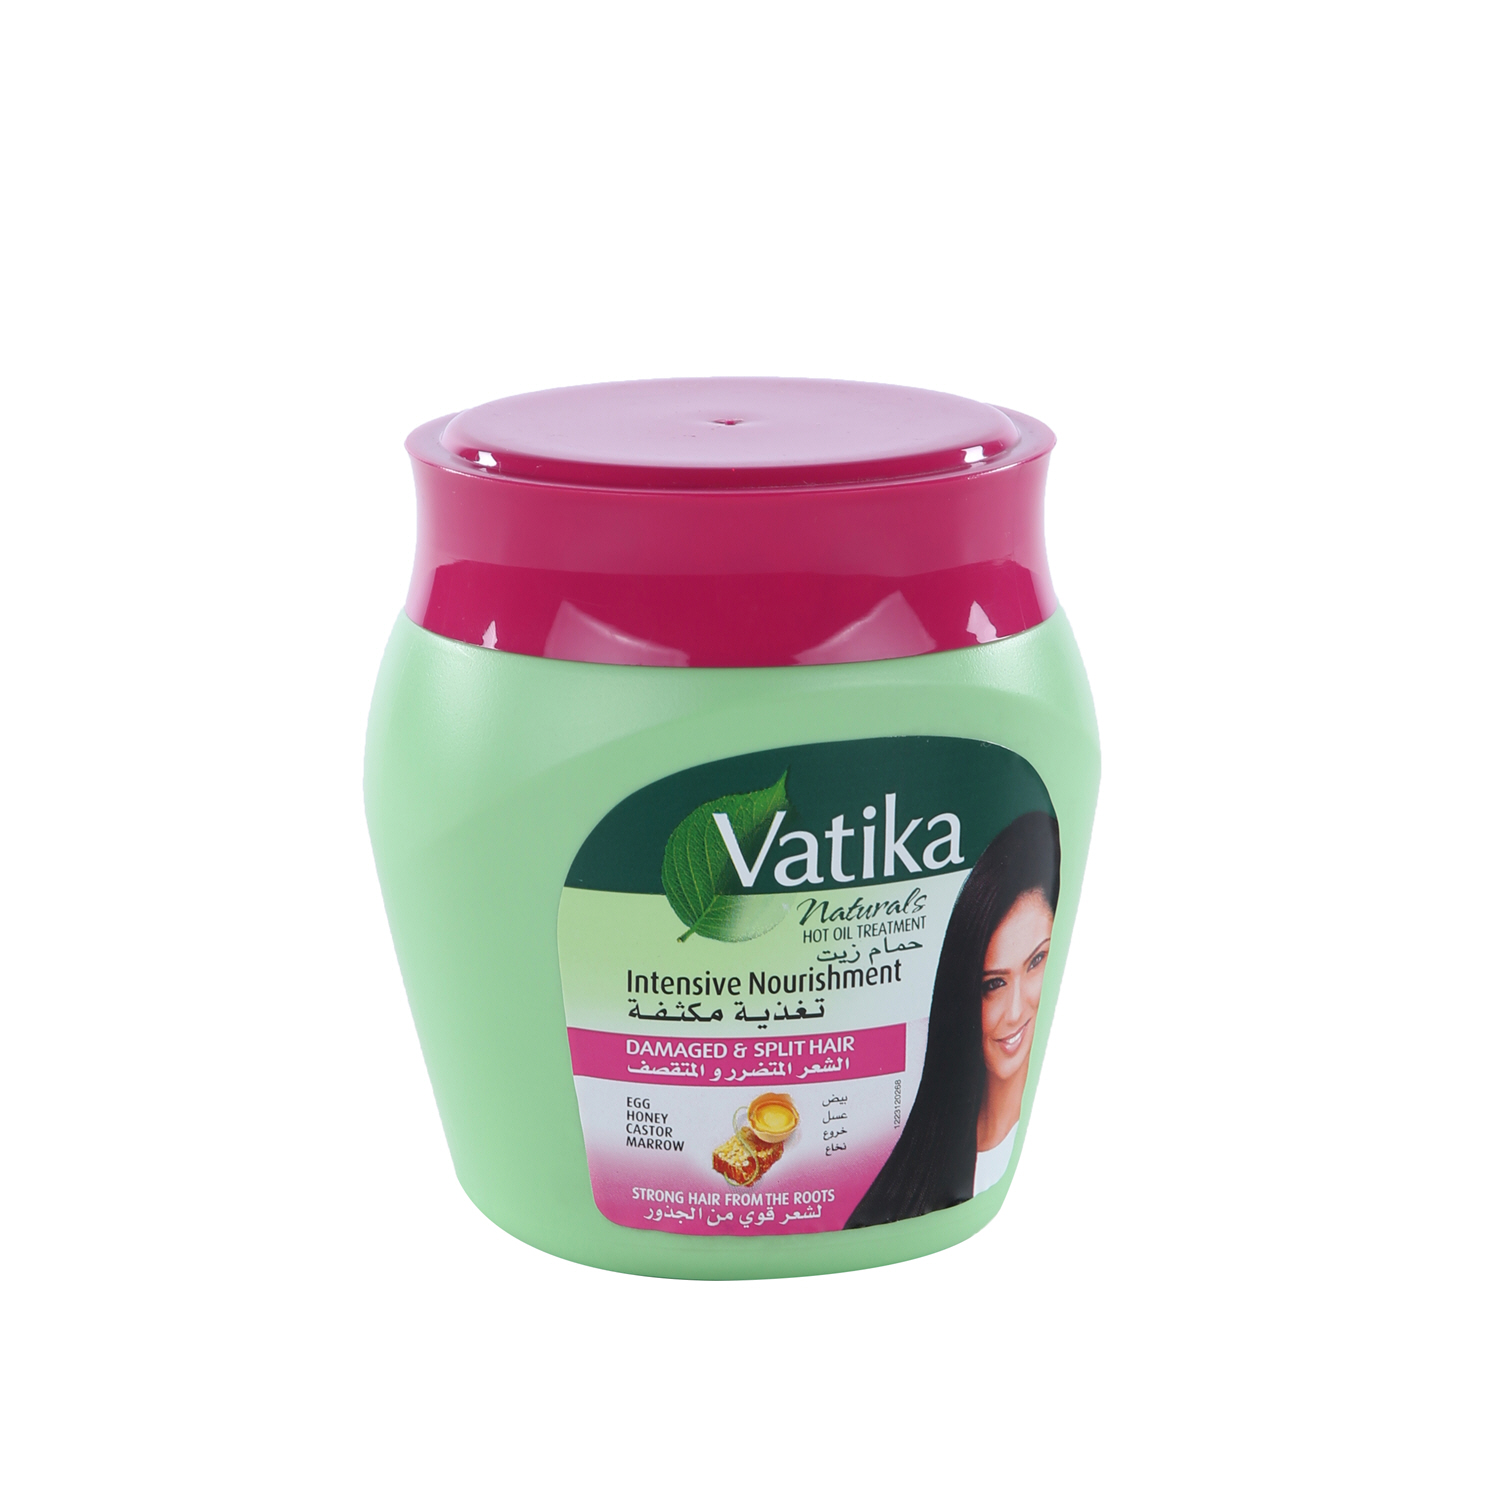 Dabur Vatika Hot Oil Treatment Damaged & Split Hair 500 g